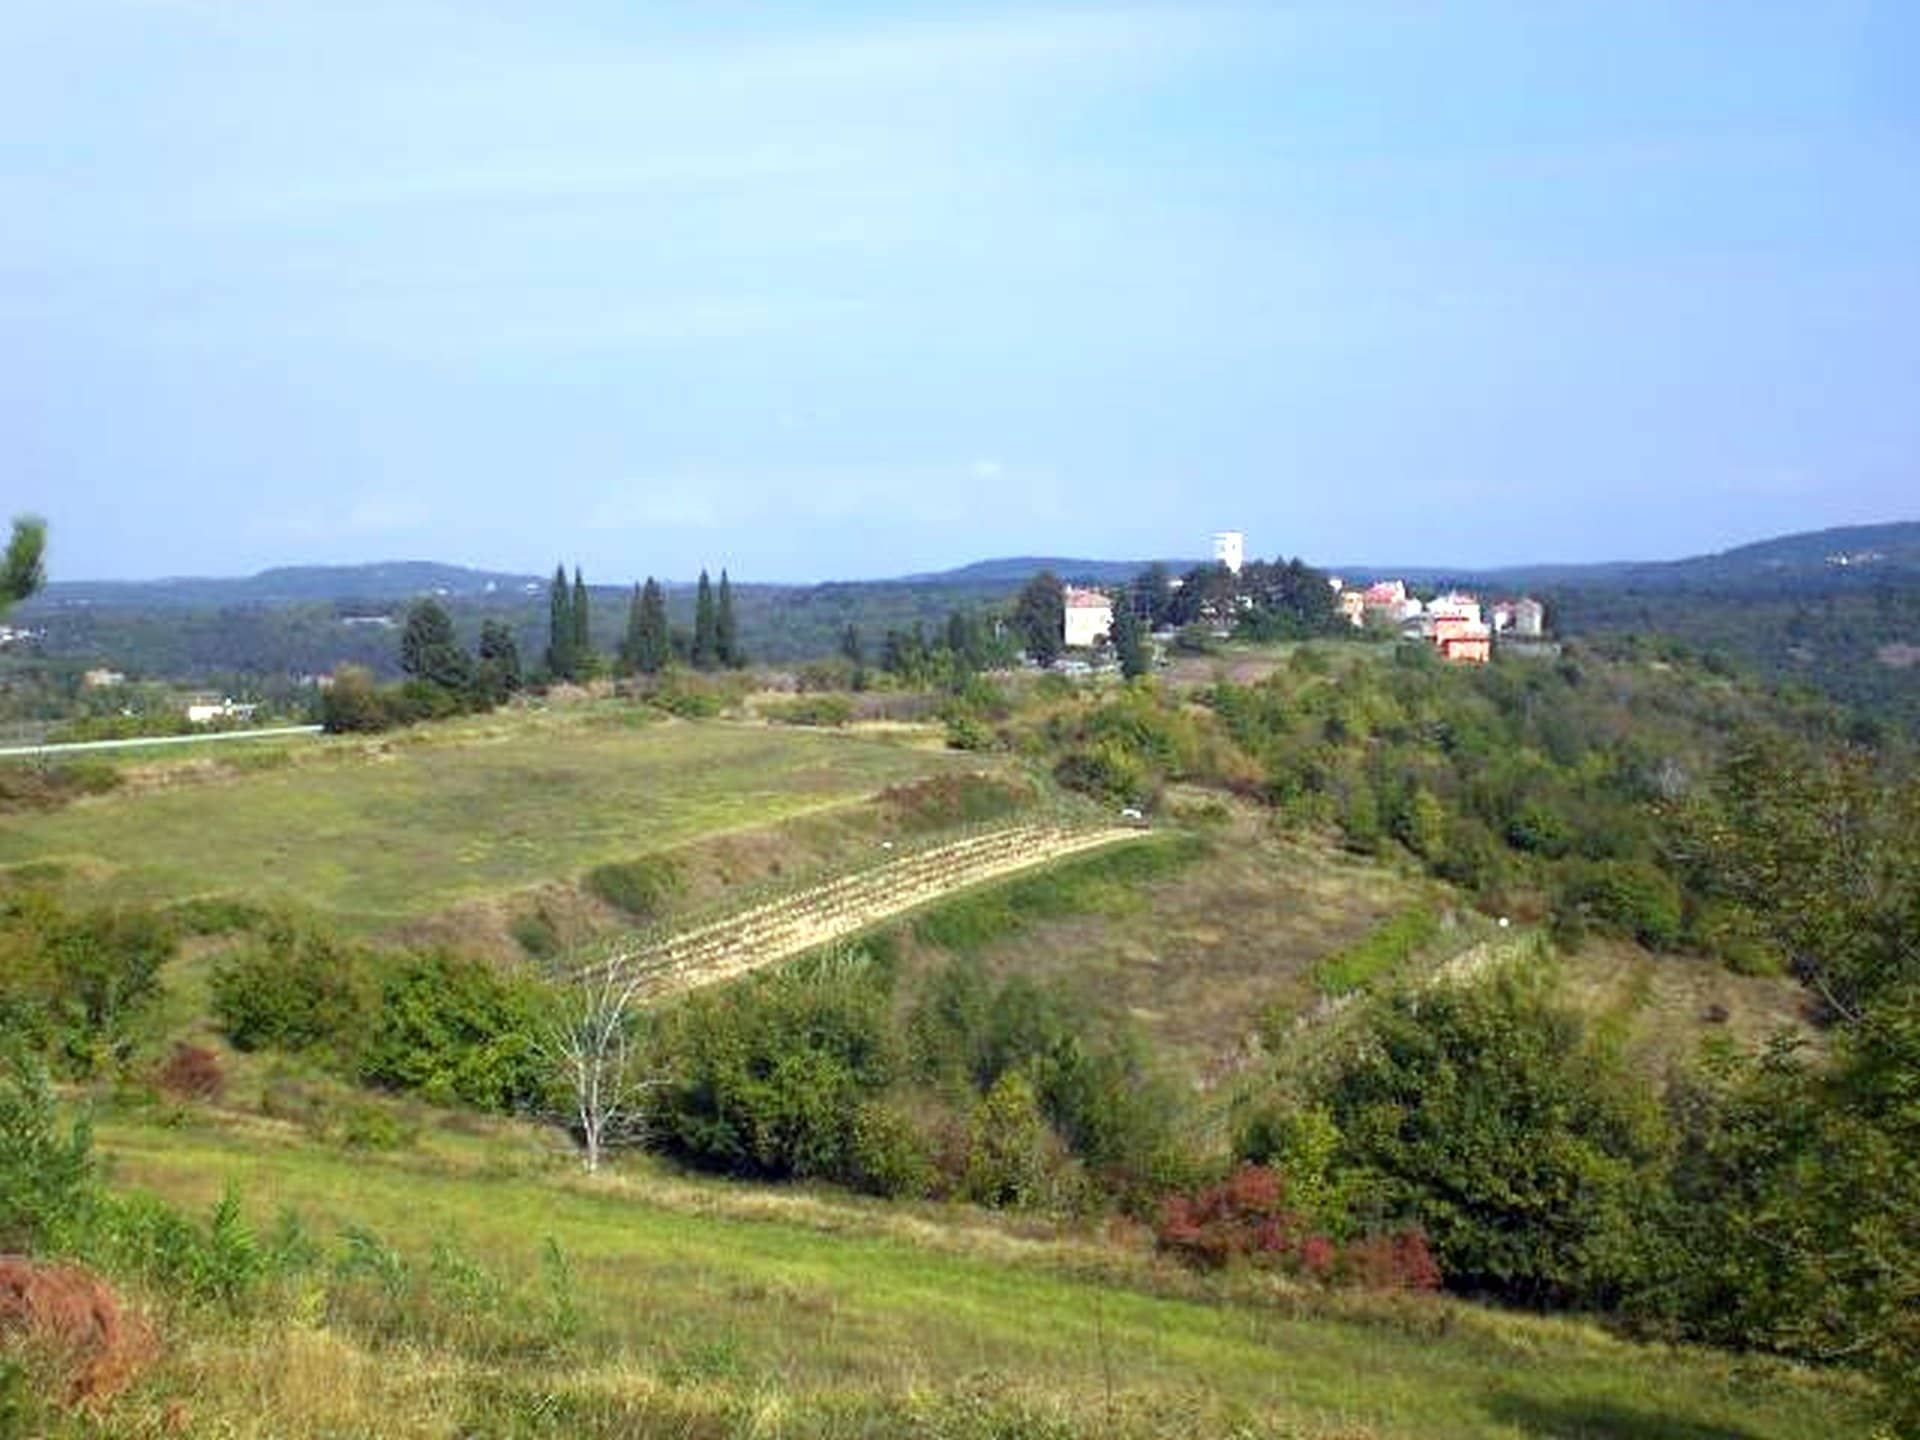 Z-445 oko 13100 m2 poljoprivrednog zemljišta sa prekrasnim pogledom kod Oprtlja – pogodno za vinograde